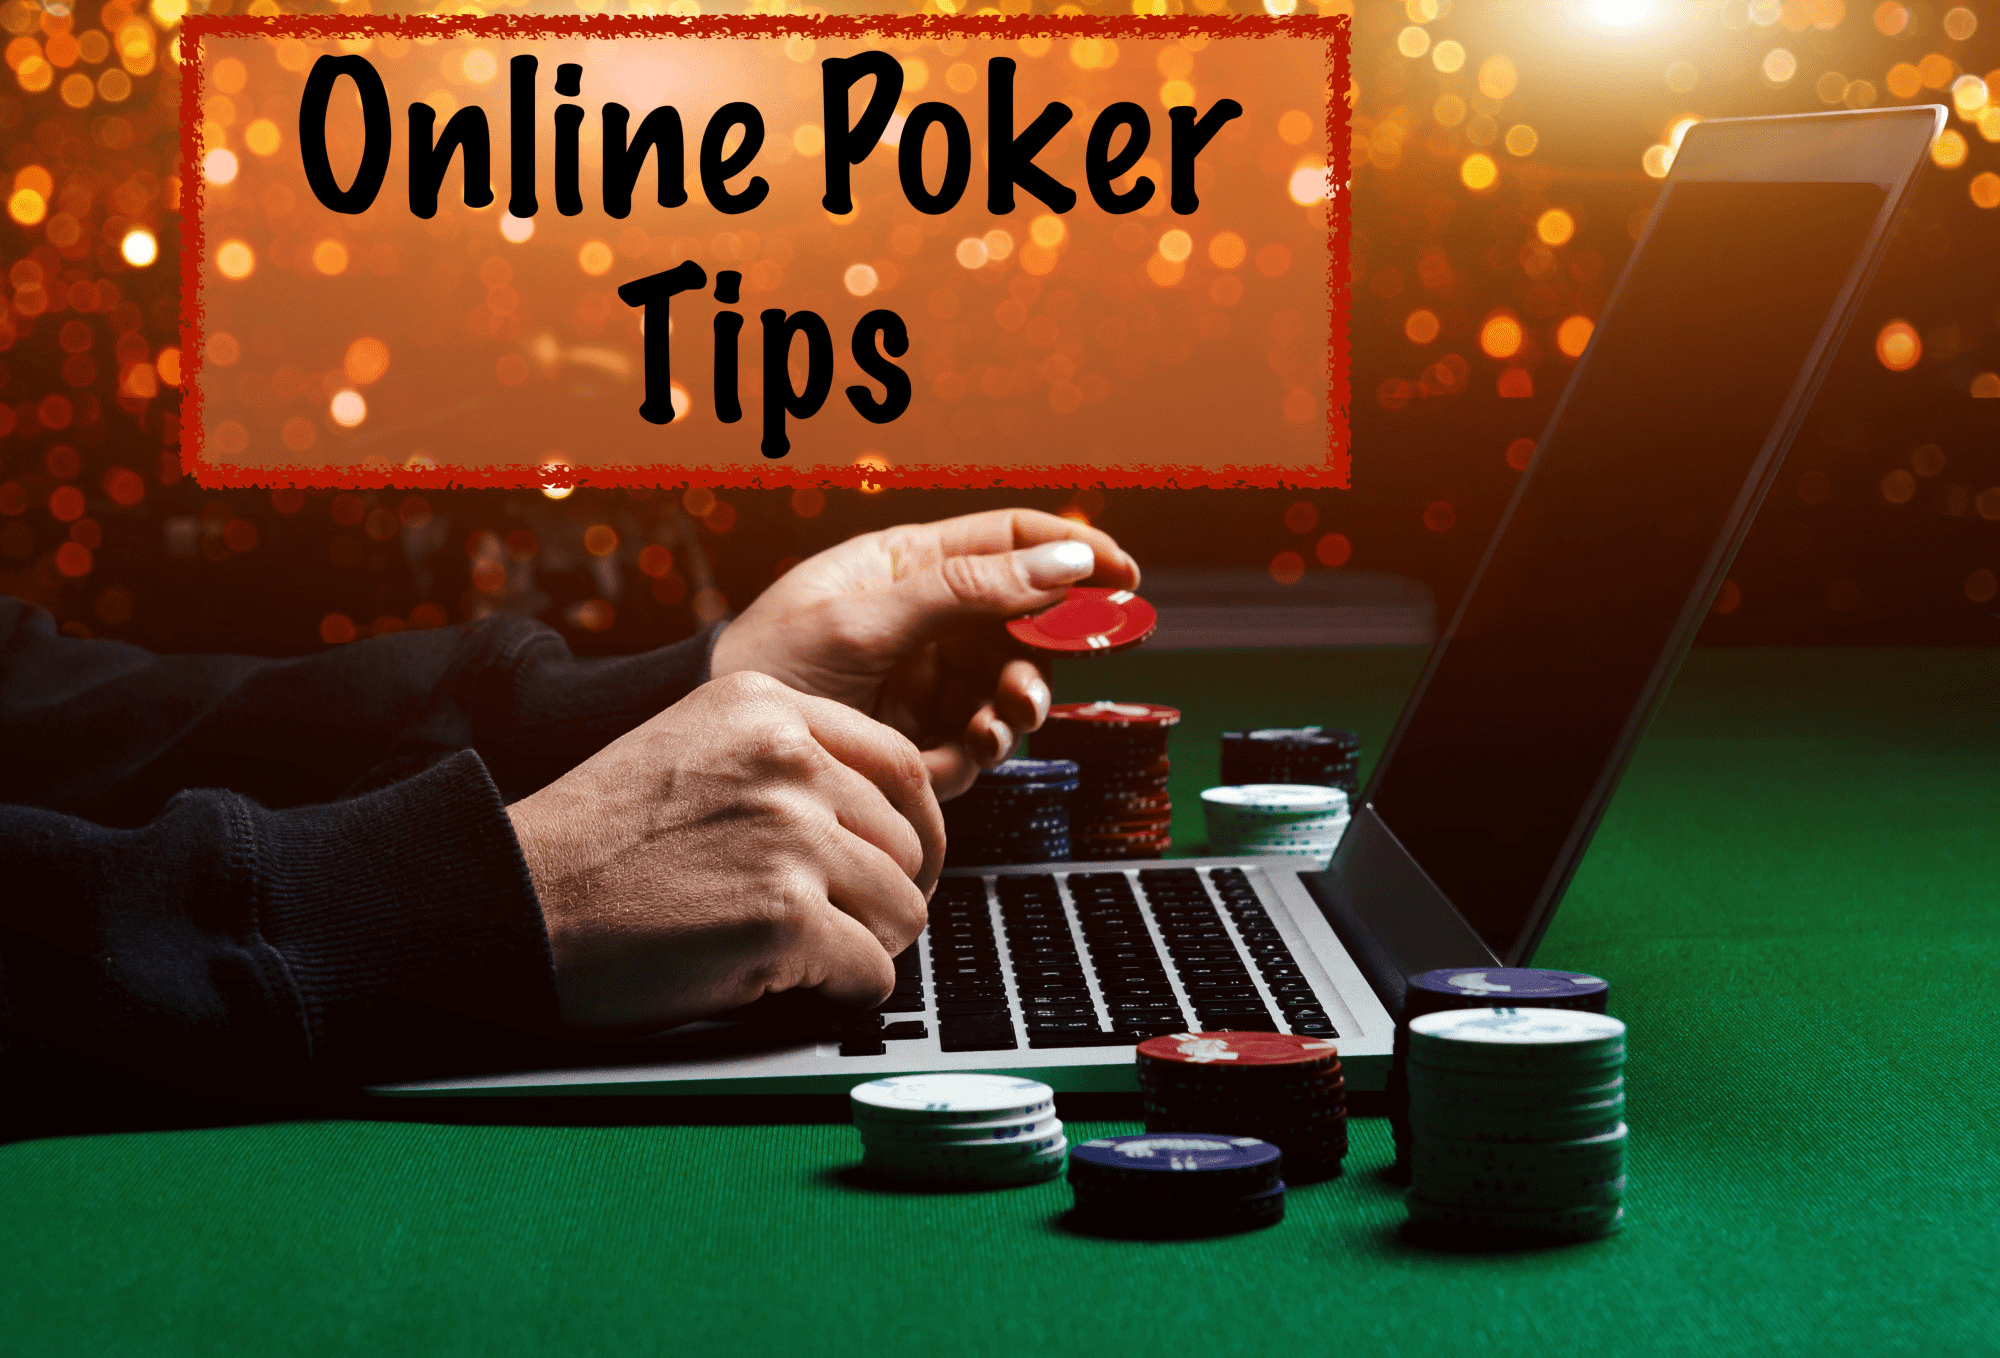 tips for online poker